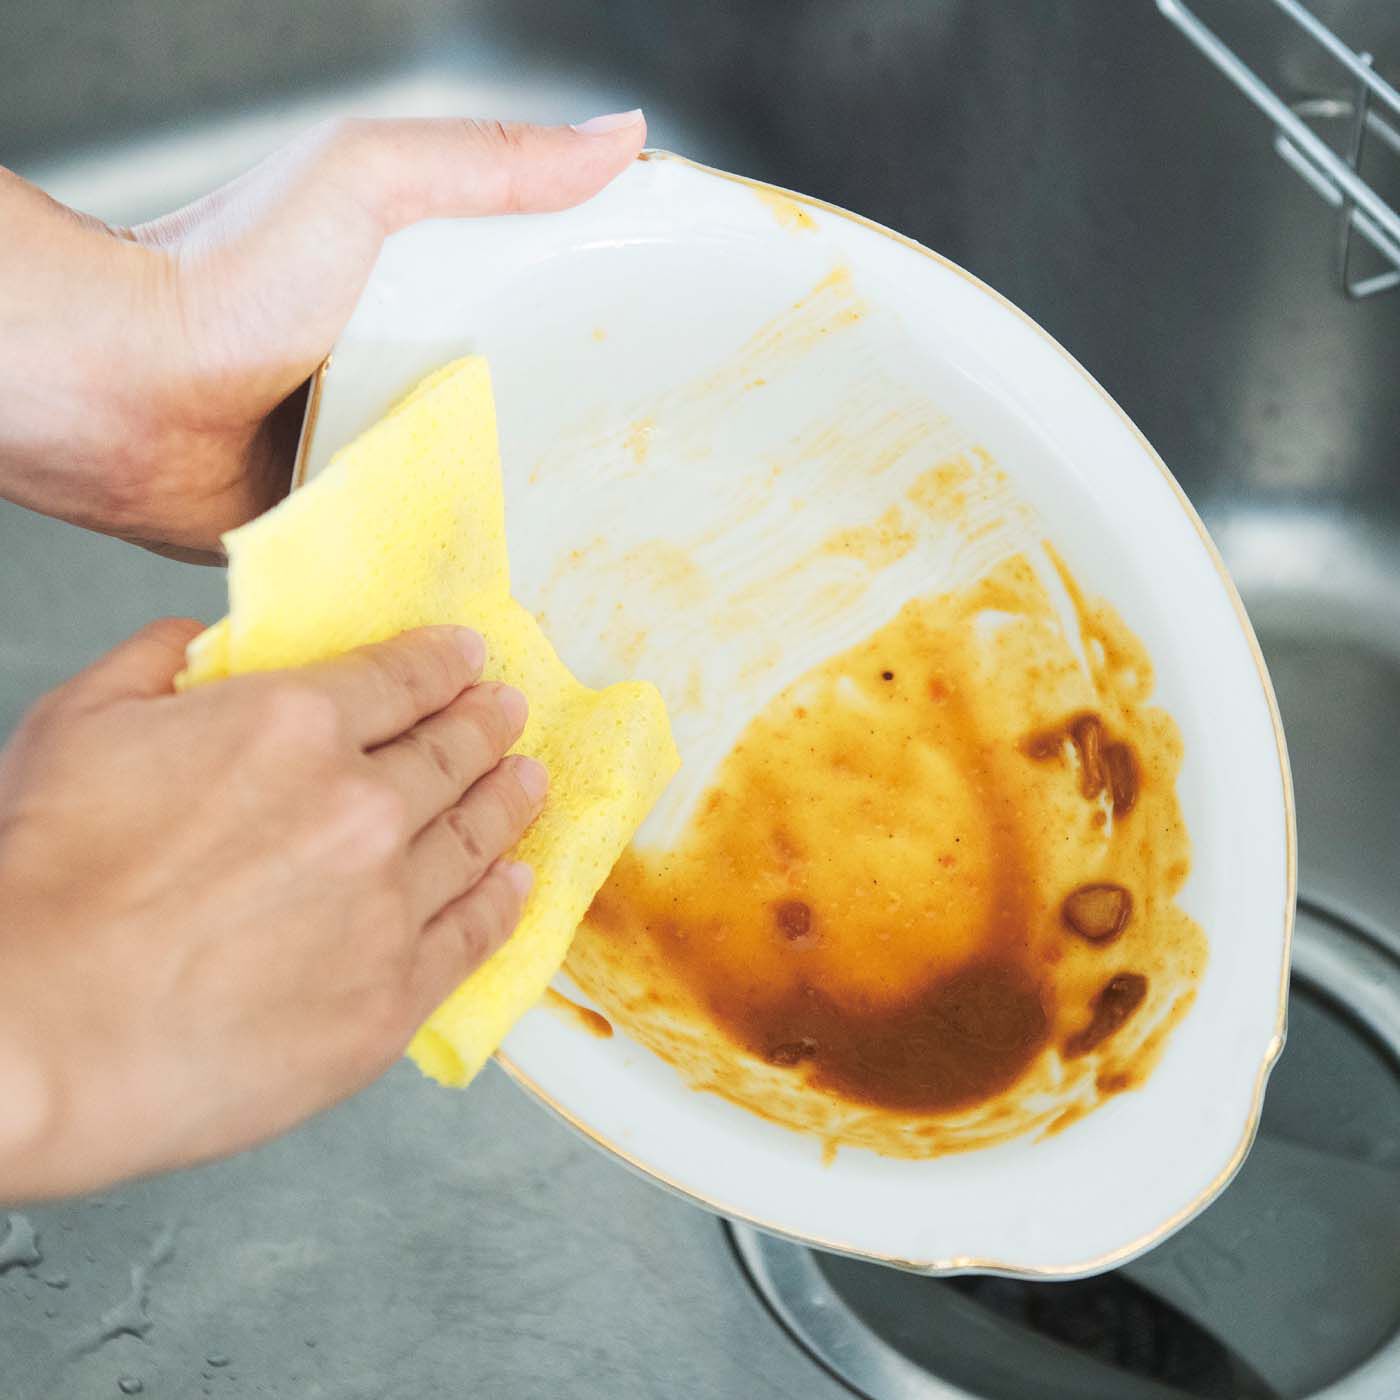 フェリシモの雑貨Kraso|1/d after Curry ペーパースポンジの会|皿に残ったカレーをサッとふき取れば、食器洗いがらくちんに。